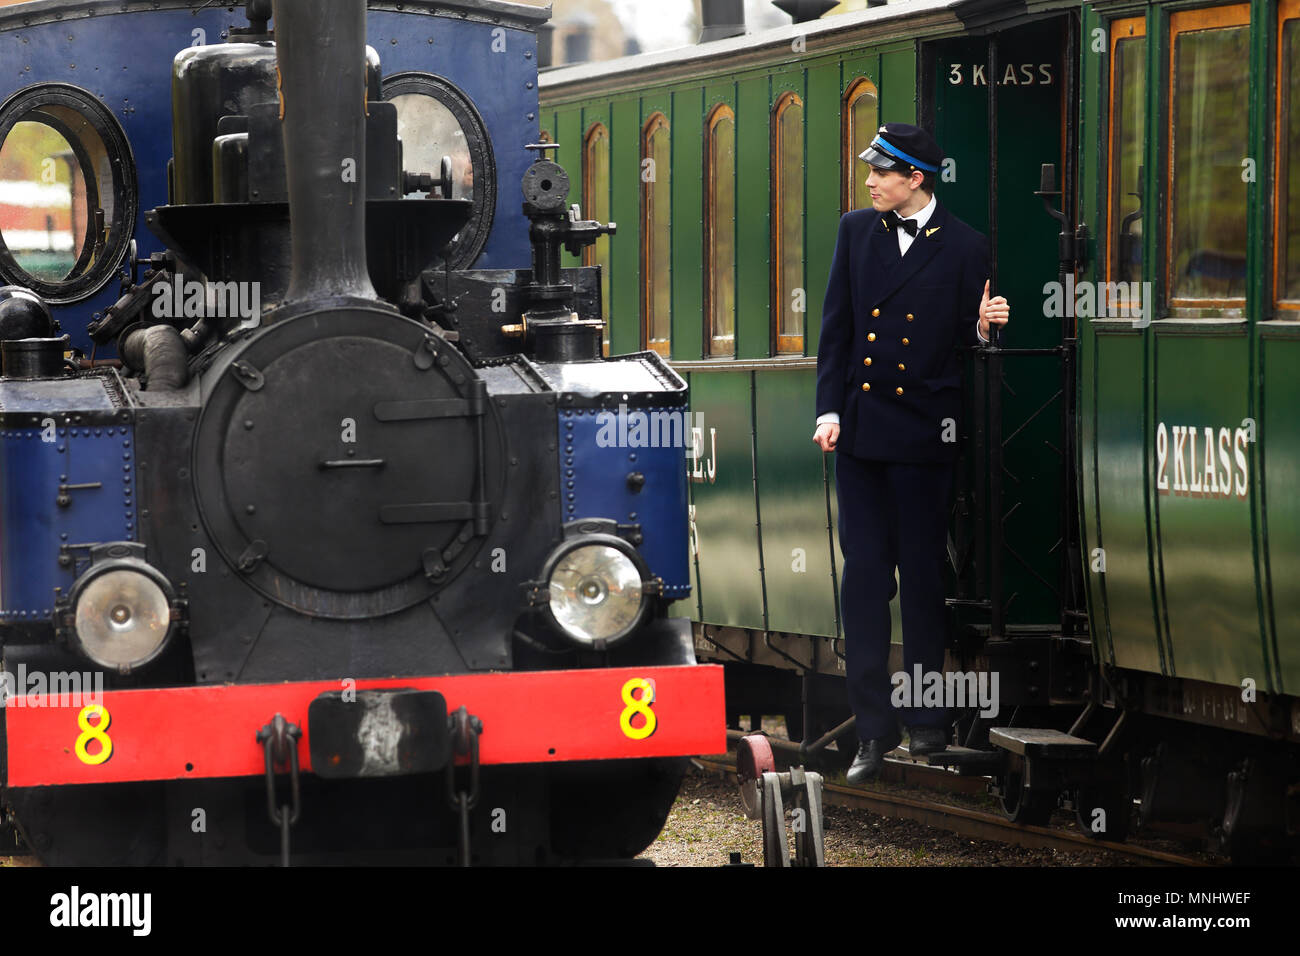 Mariefred, Suède - 11 mai 2013 : le chef de train est sur le marchepied de la voiture à côté de locomotive vapeur numéro 8 Emsfors, au railwa Banque D'Images